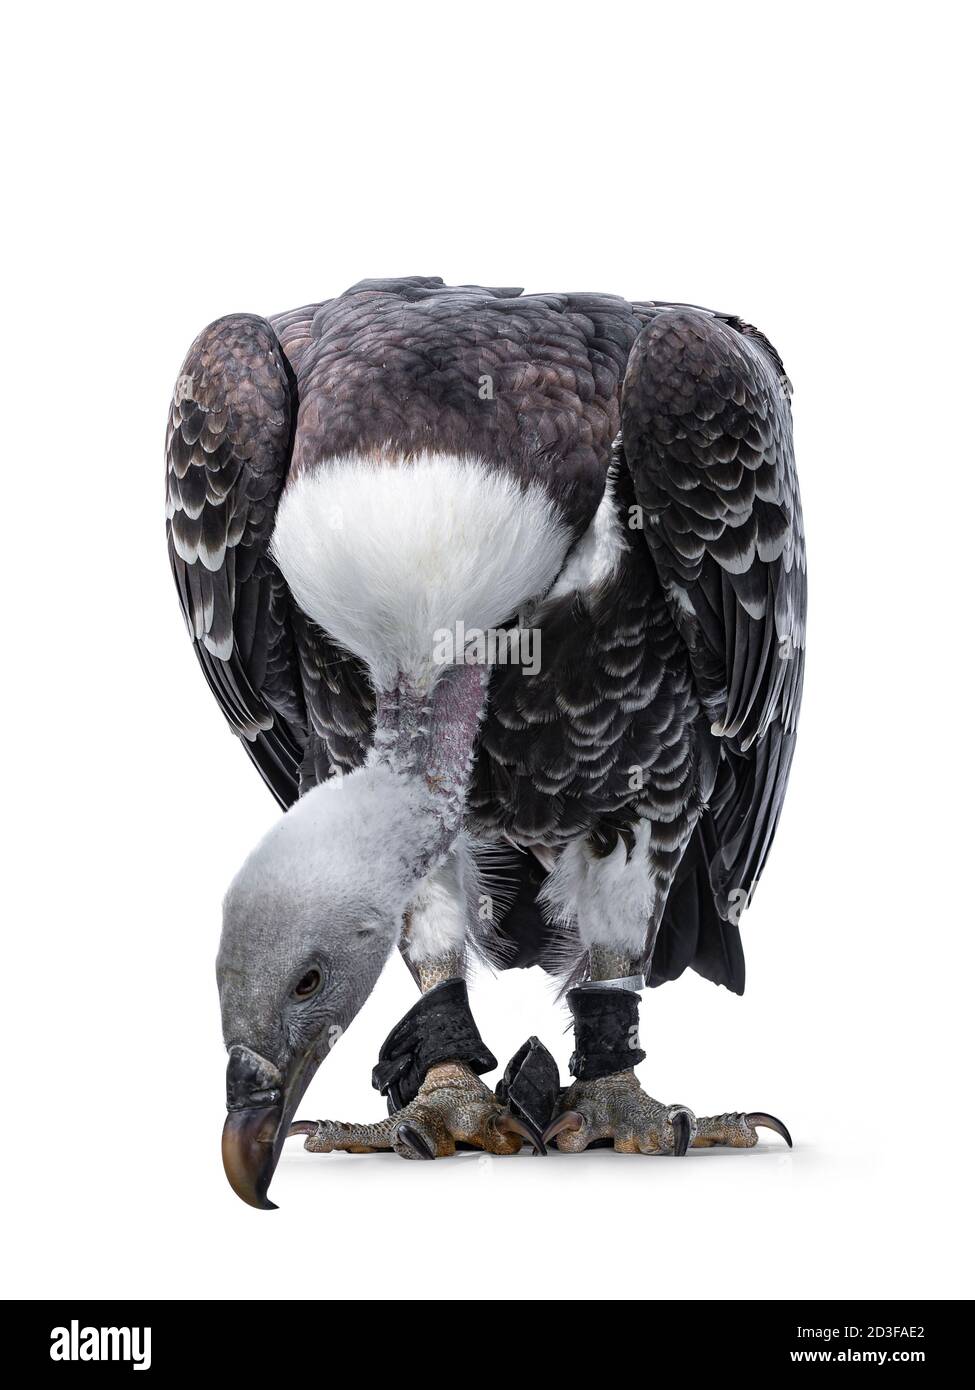 Jeune adulte Rüppell vautour du corps de griffin face à l'avant. La tête est complètement abaissée et aussi en regardant vers le bas. Isolé sur fond blanc. Banque D'Images